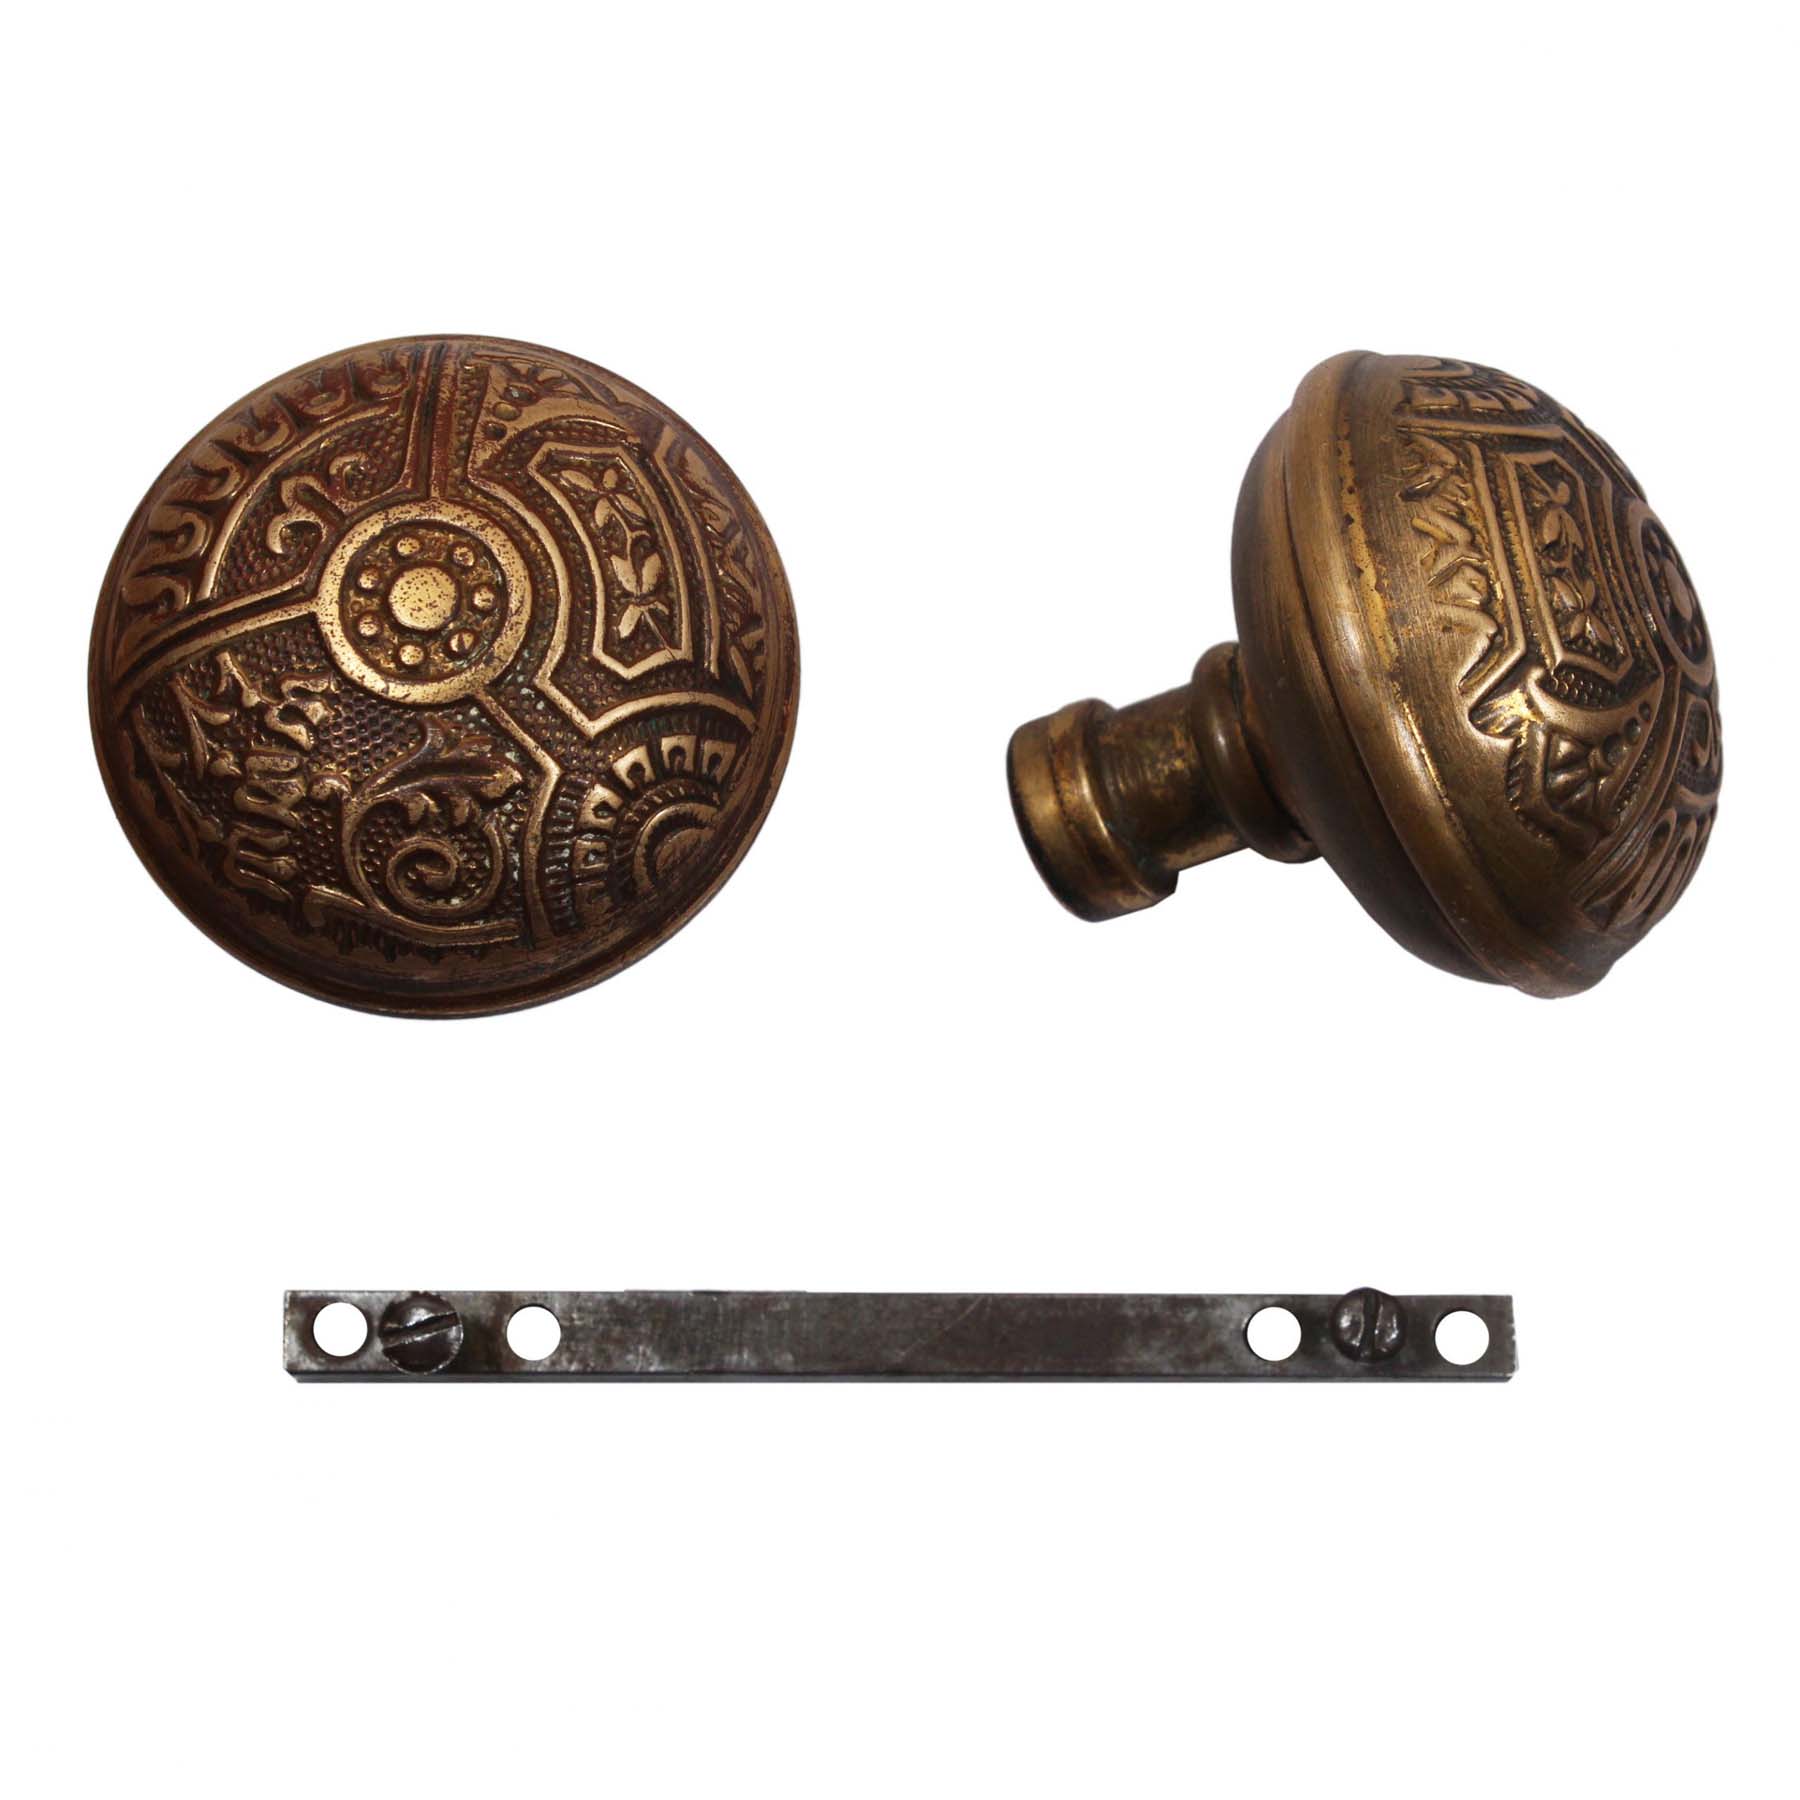 SOLD Antique Bronze “Ceylon” Door Hardware Set by Corbin, c. 1895-71122